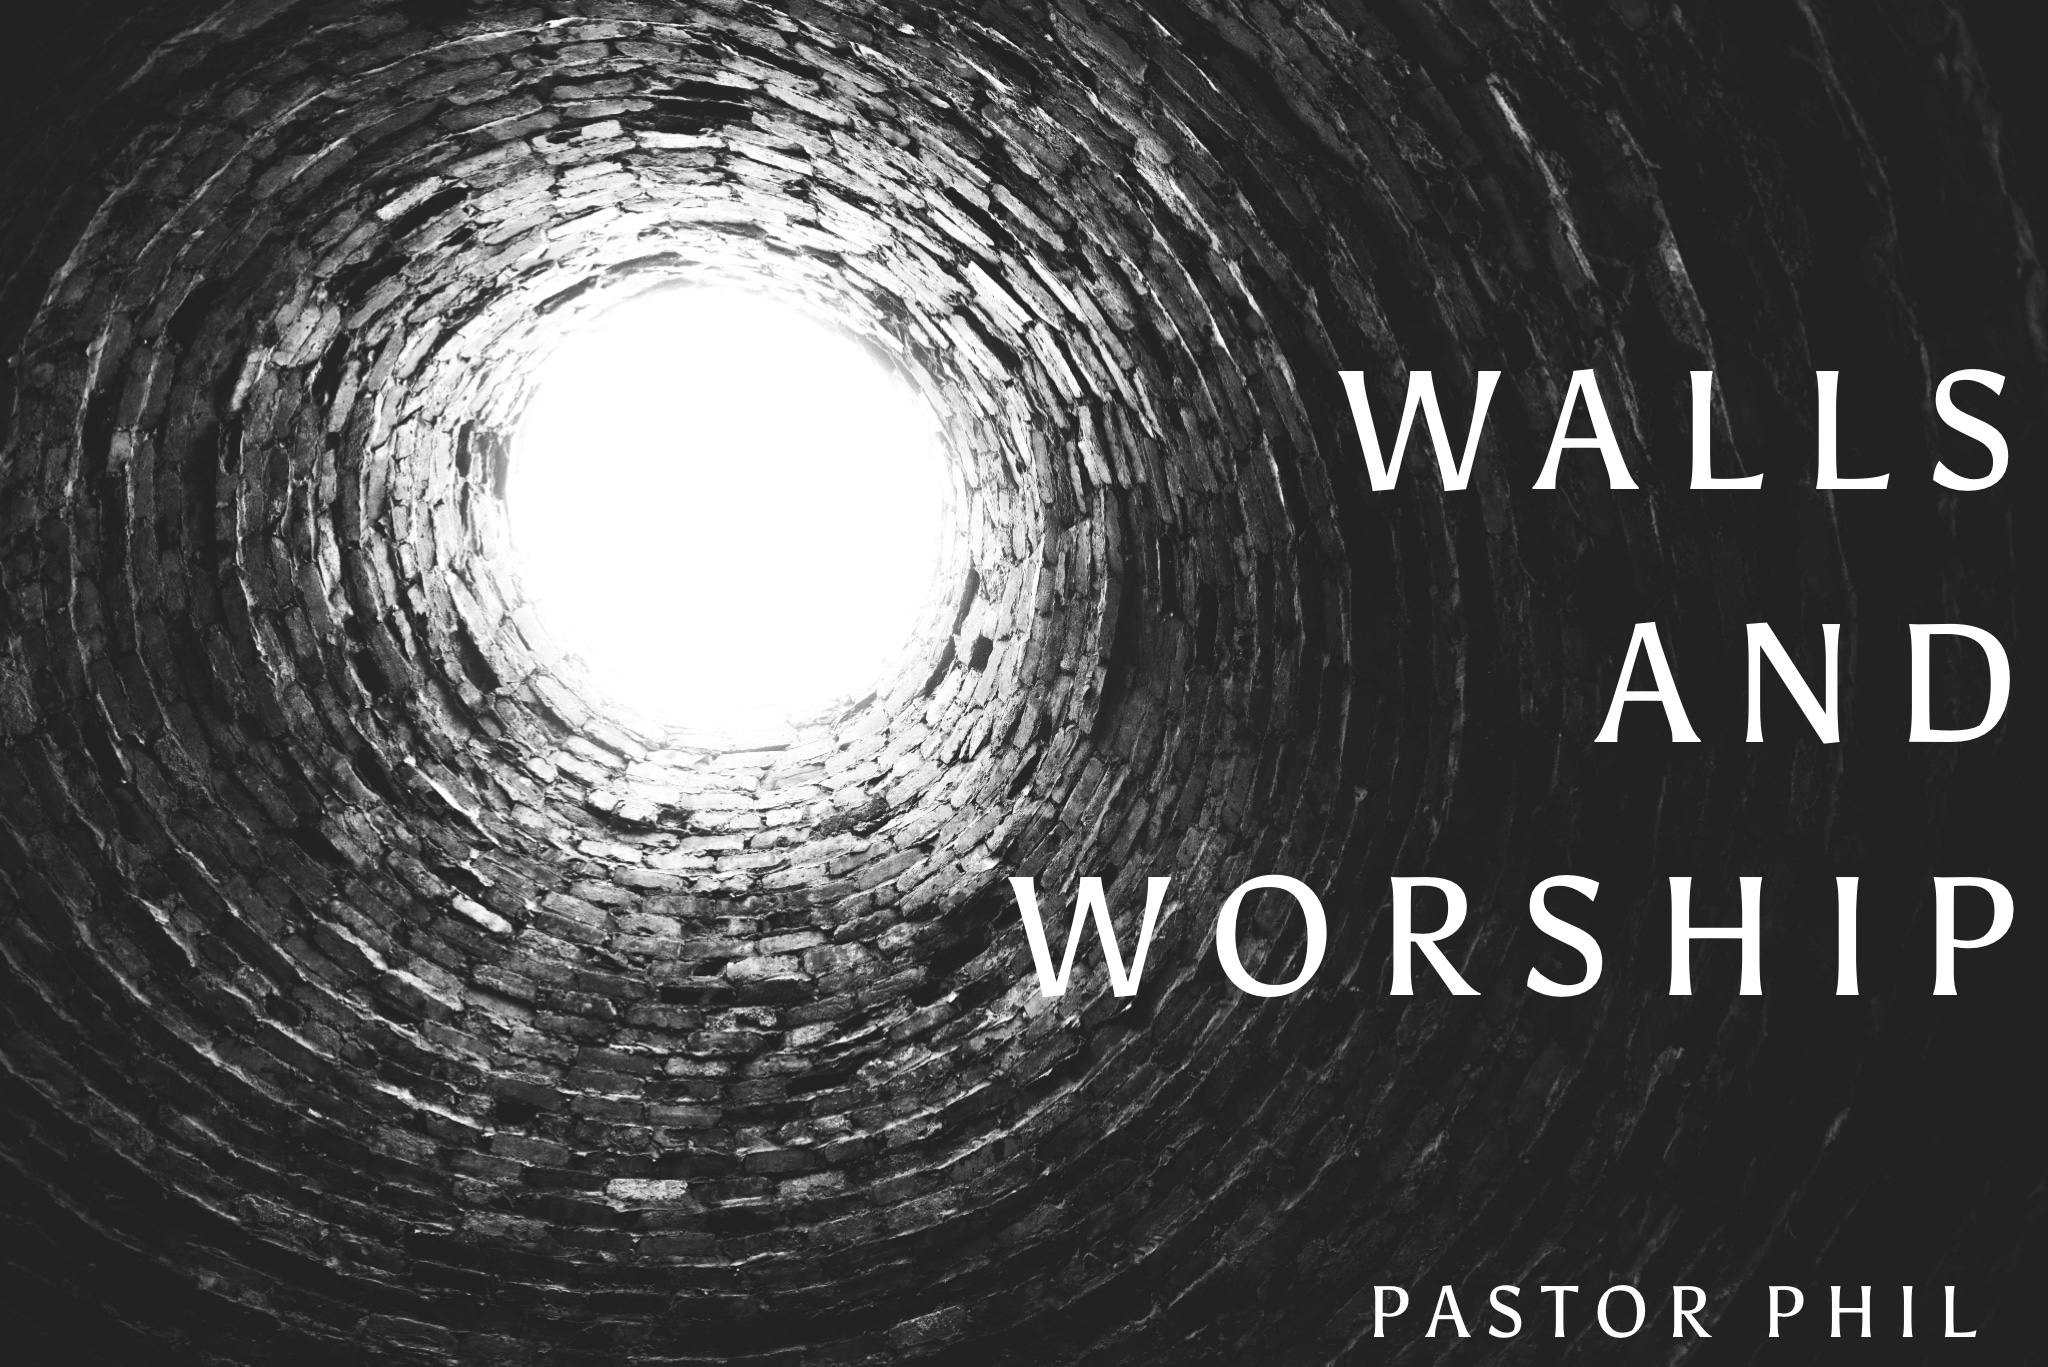 Walls and Worship